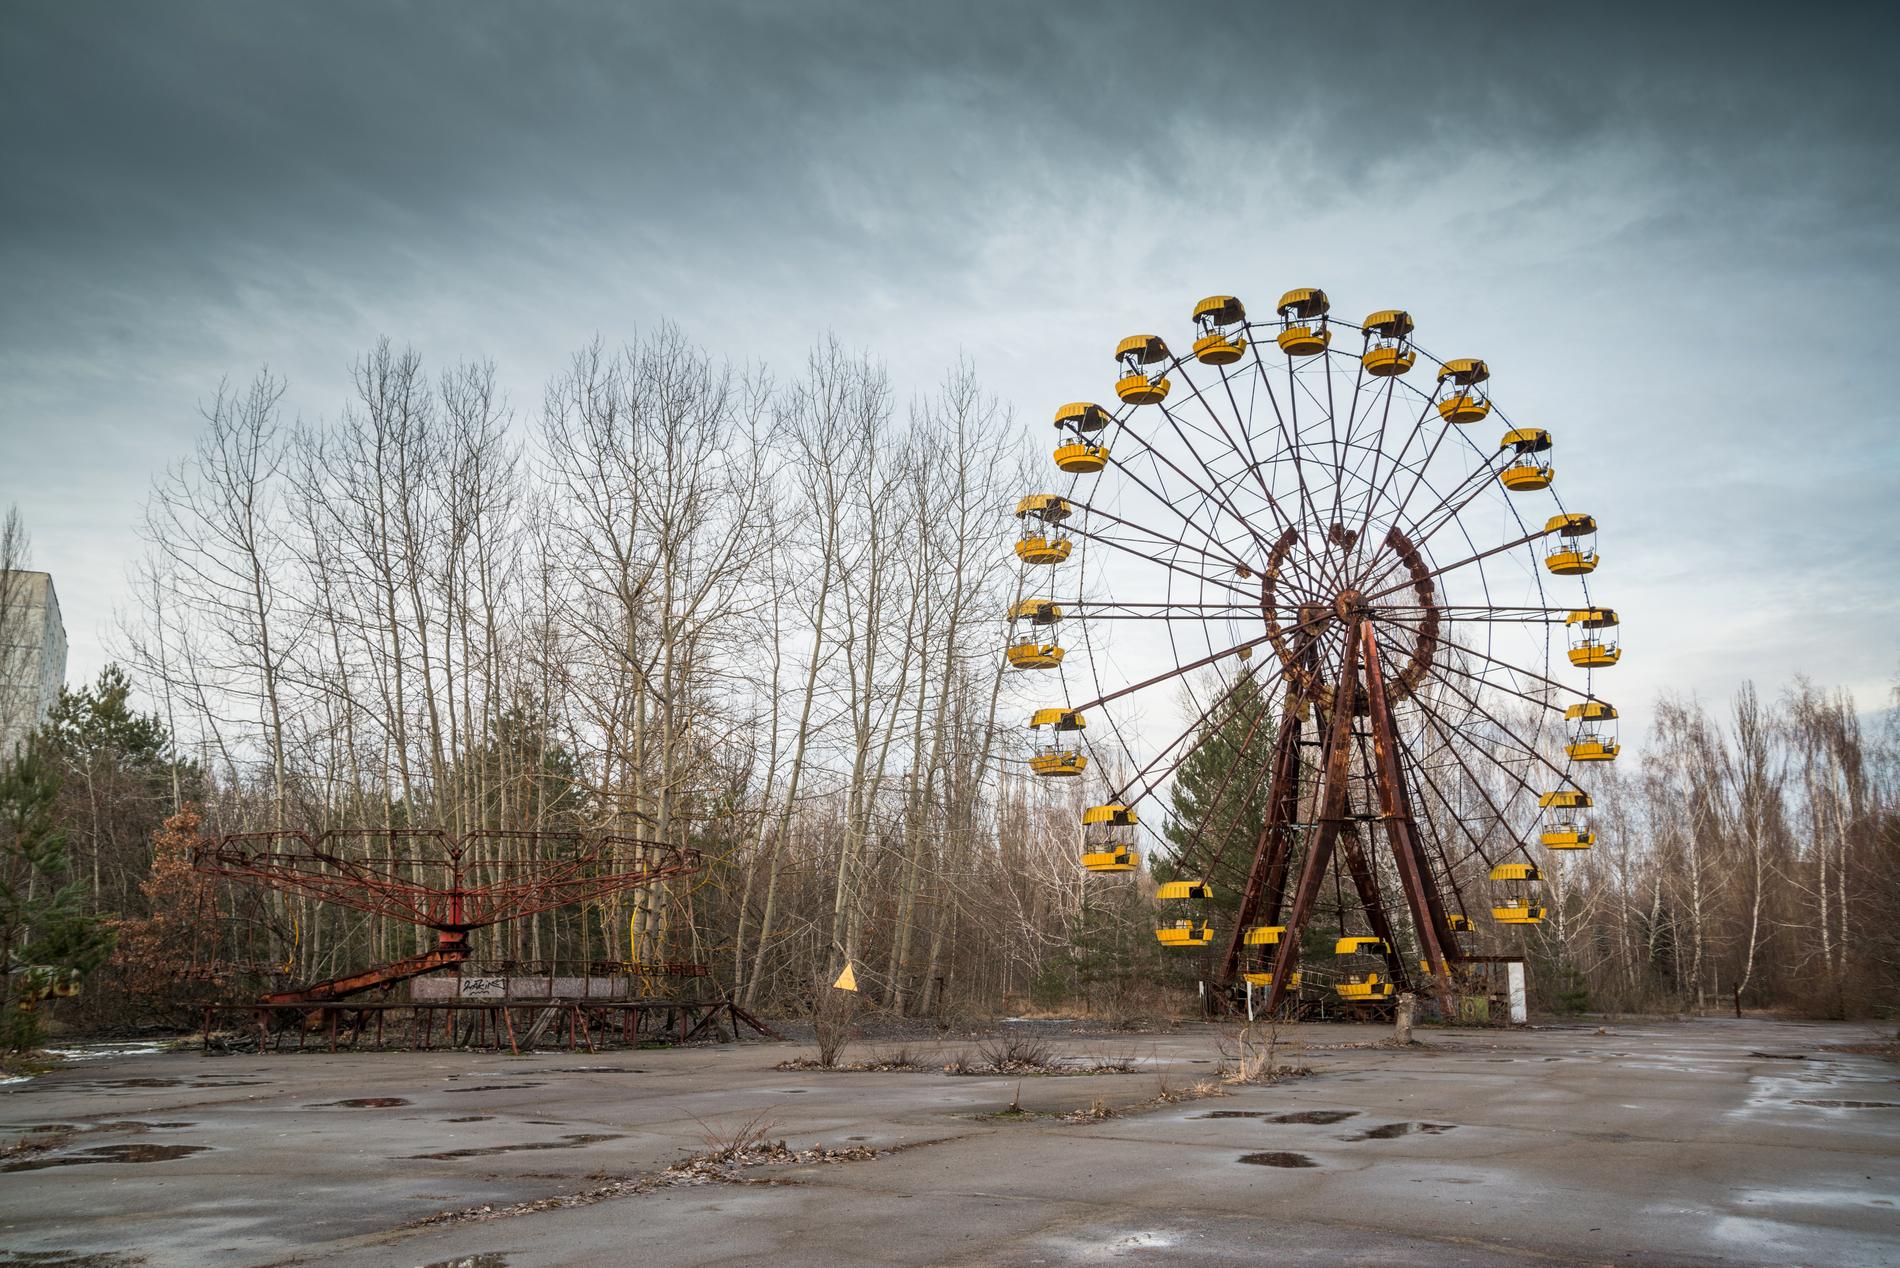 Turismen till området runt Tjernobyl har ökat de senaste månaderna. 